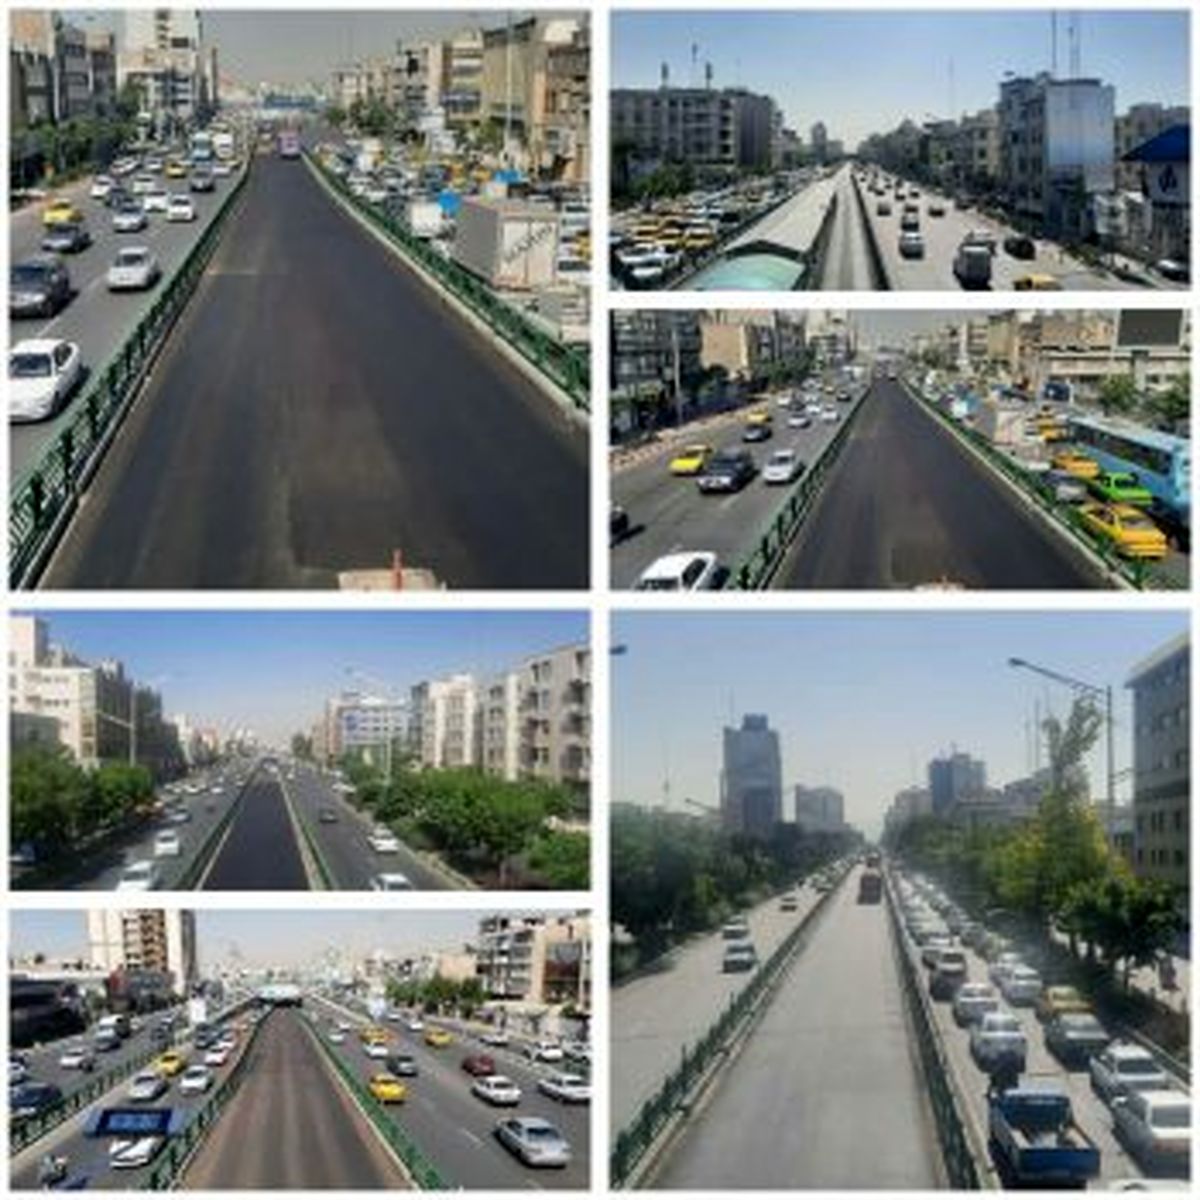 اتمام عملیات روکش مکانیزه آسفالت مسیر BRT خیابان کامل آزادی در منطقه ۱۰ پایتخت